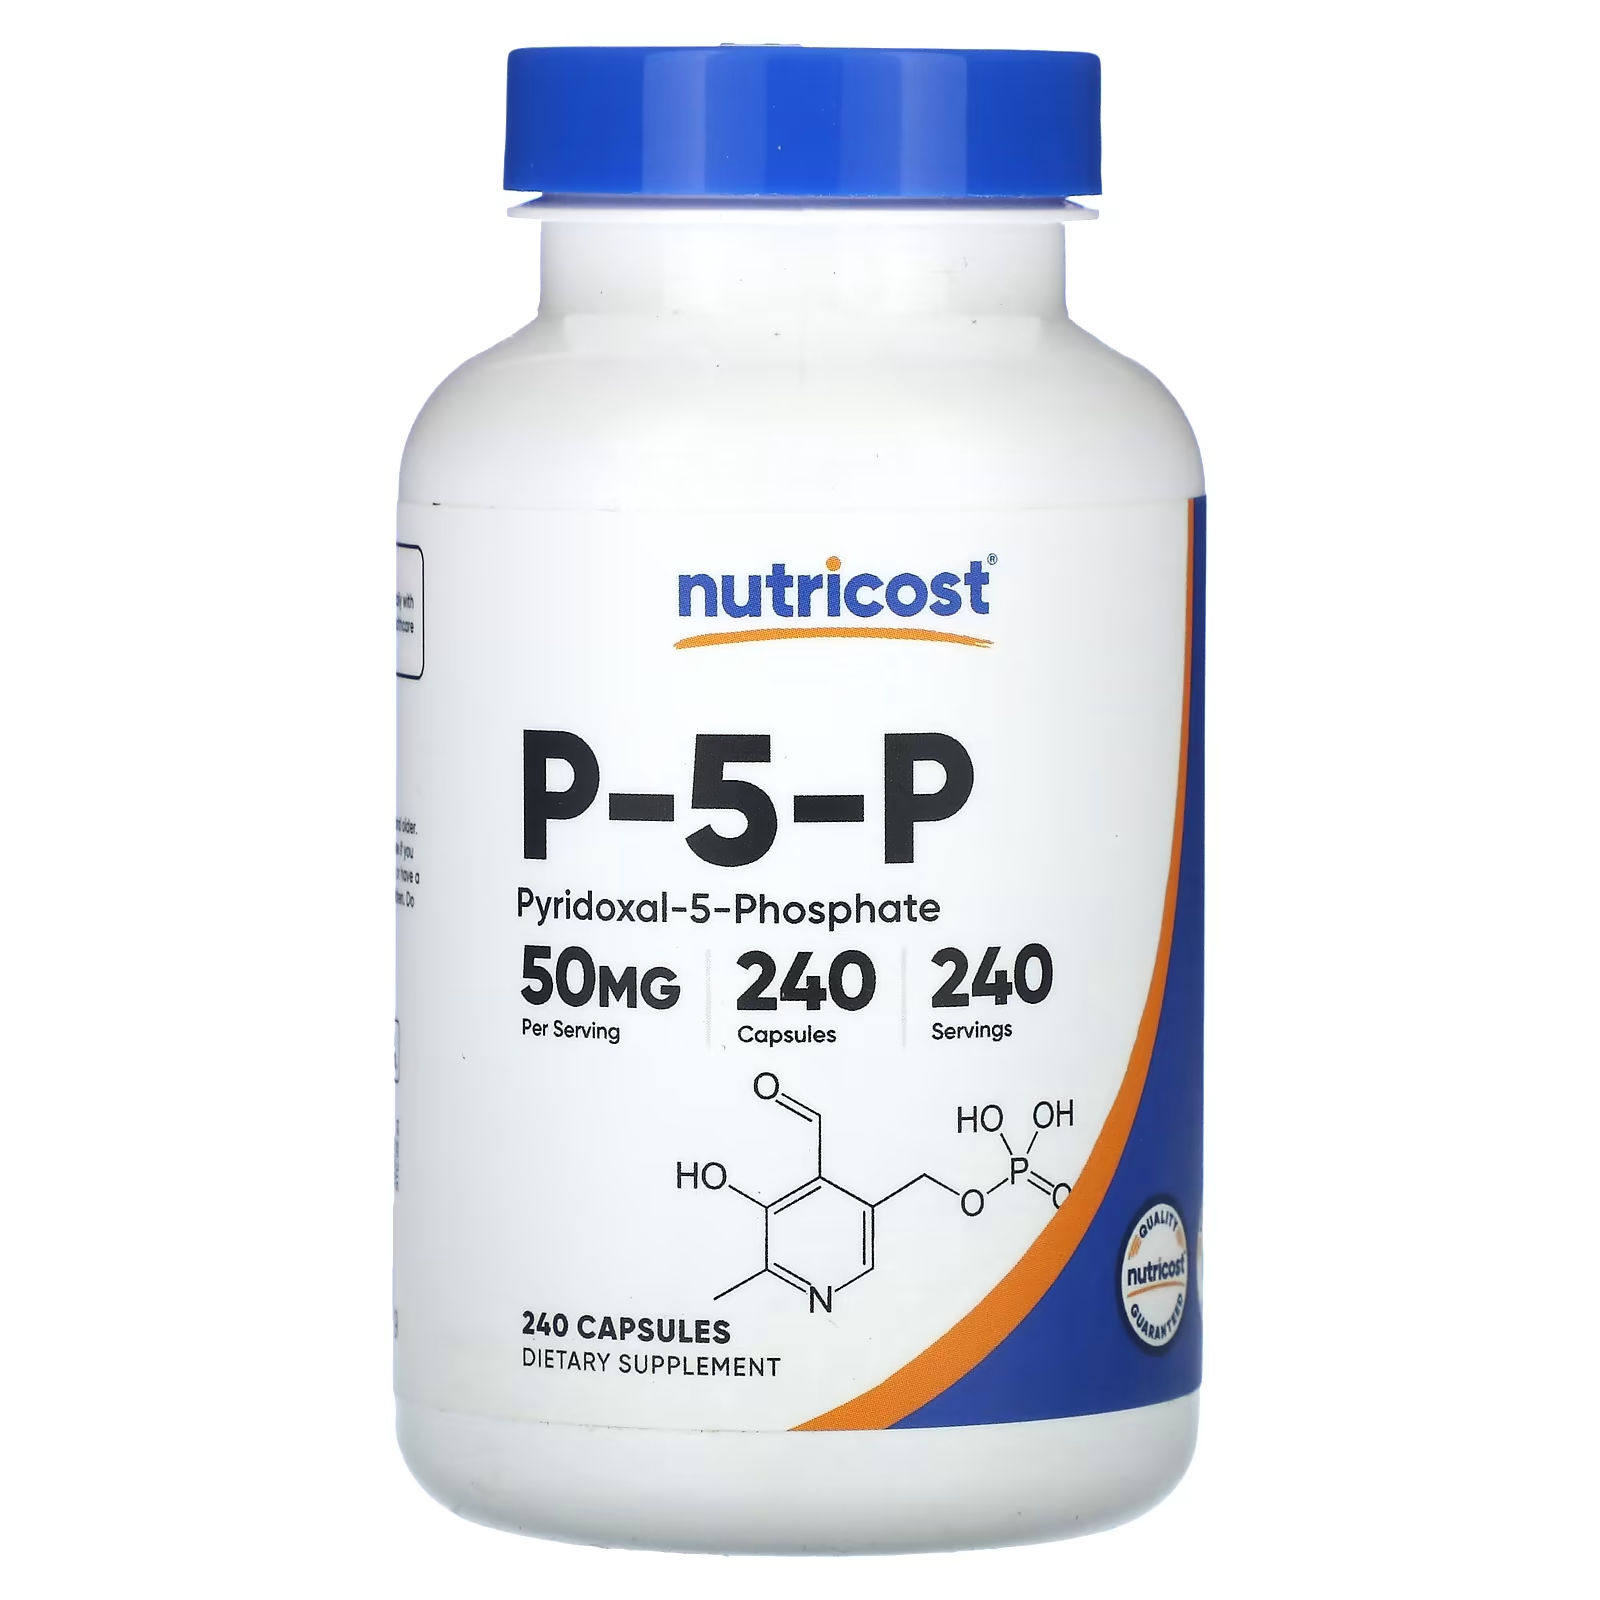 Нутрикост Nutricost P-5-P 50 мг, 240 капсул нутрикост цитрат магния 420 мг 240 капсул 205 мг в 1 капсуле nutricost